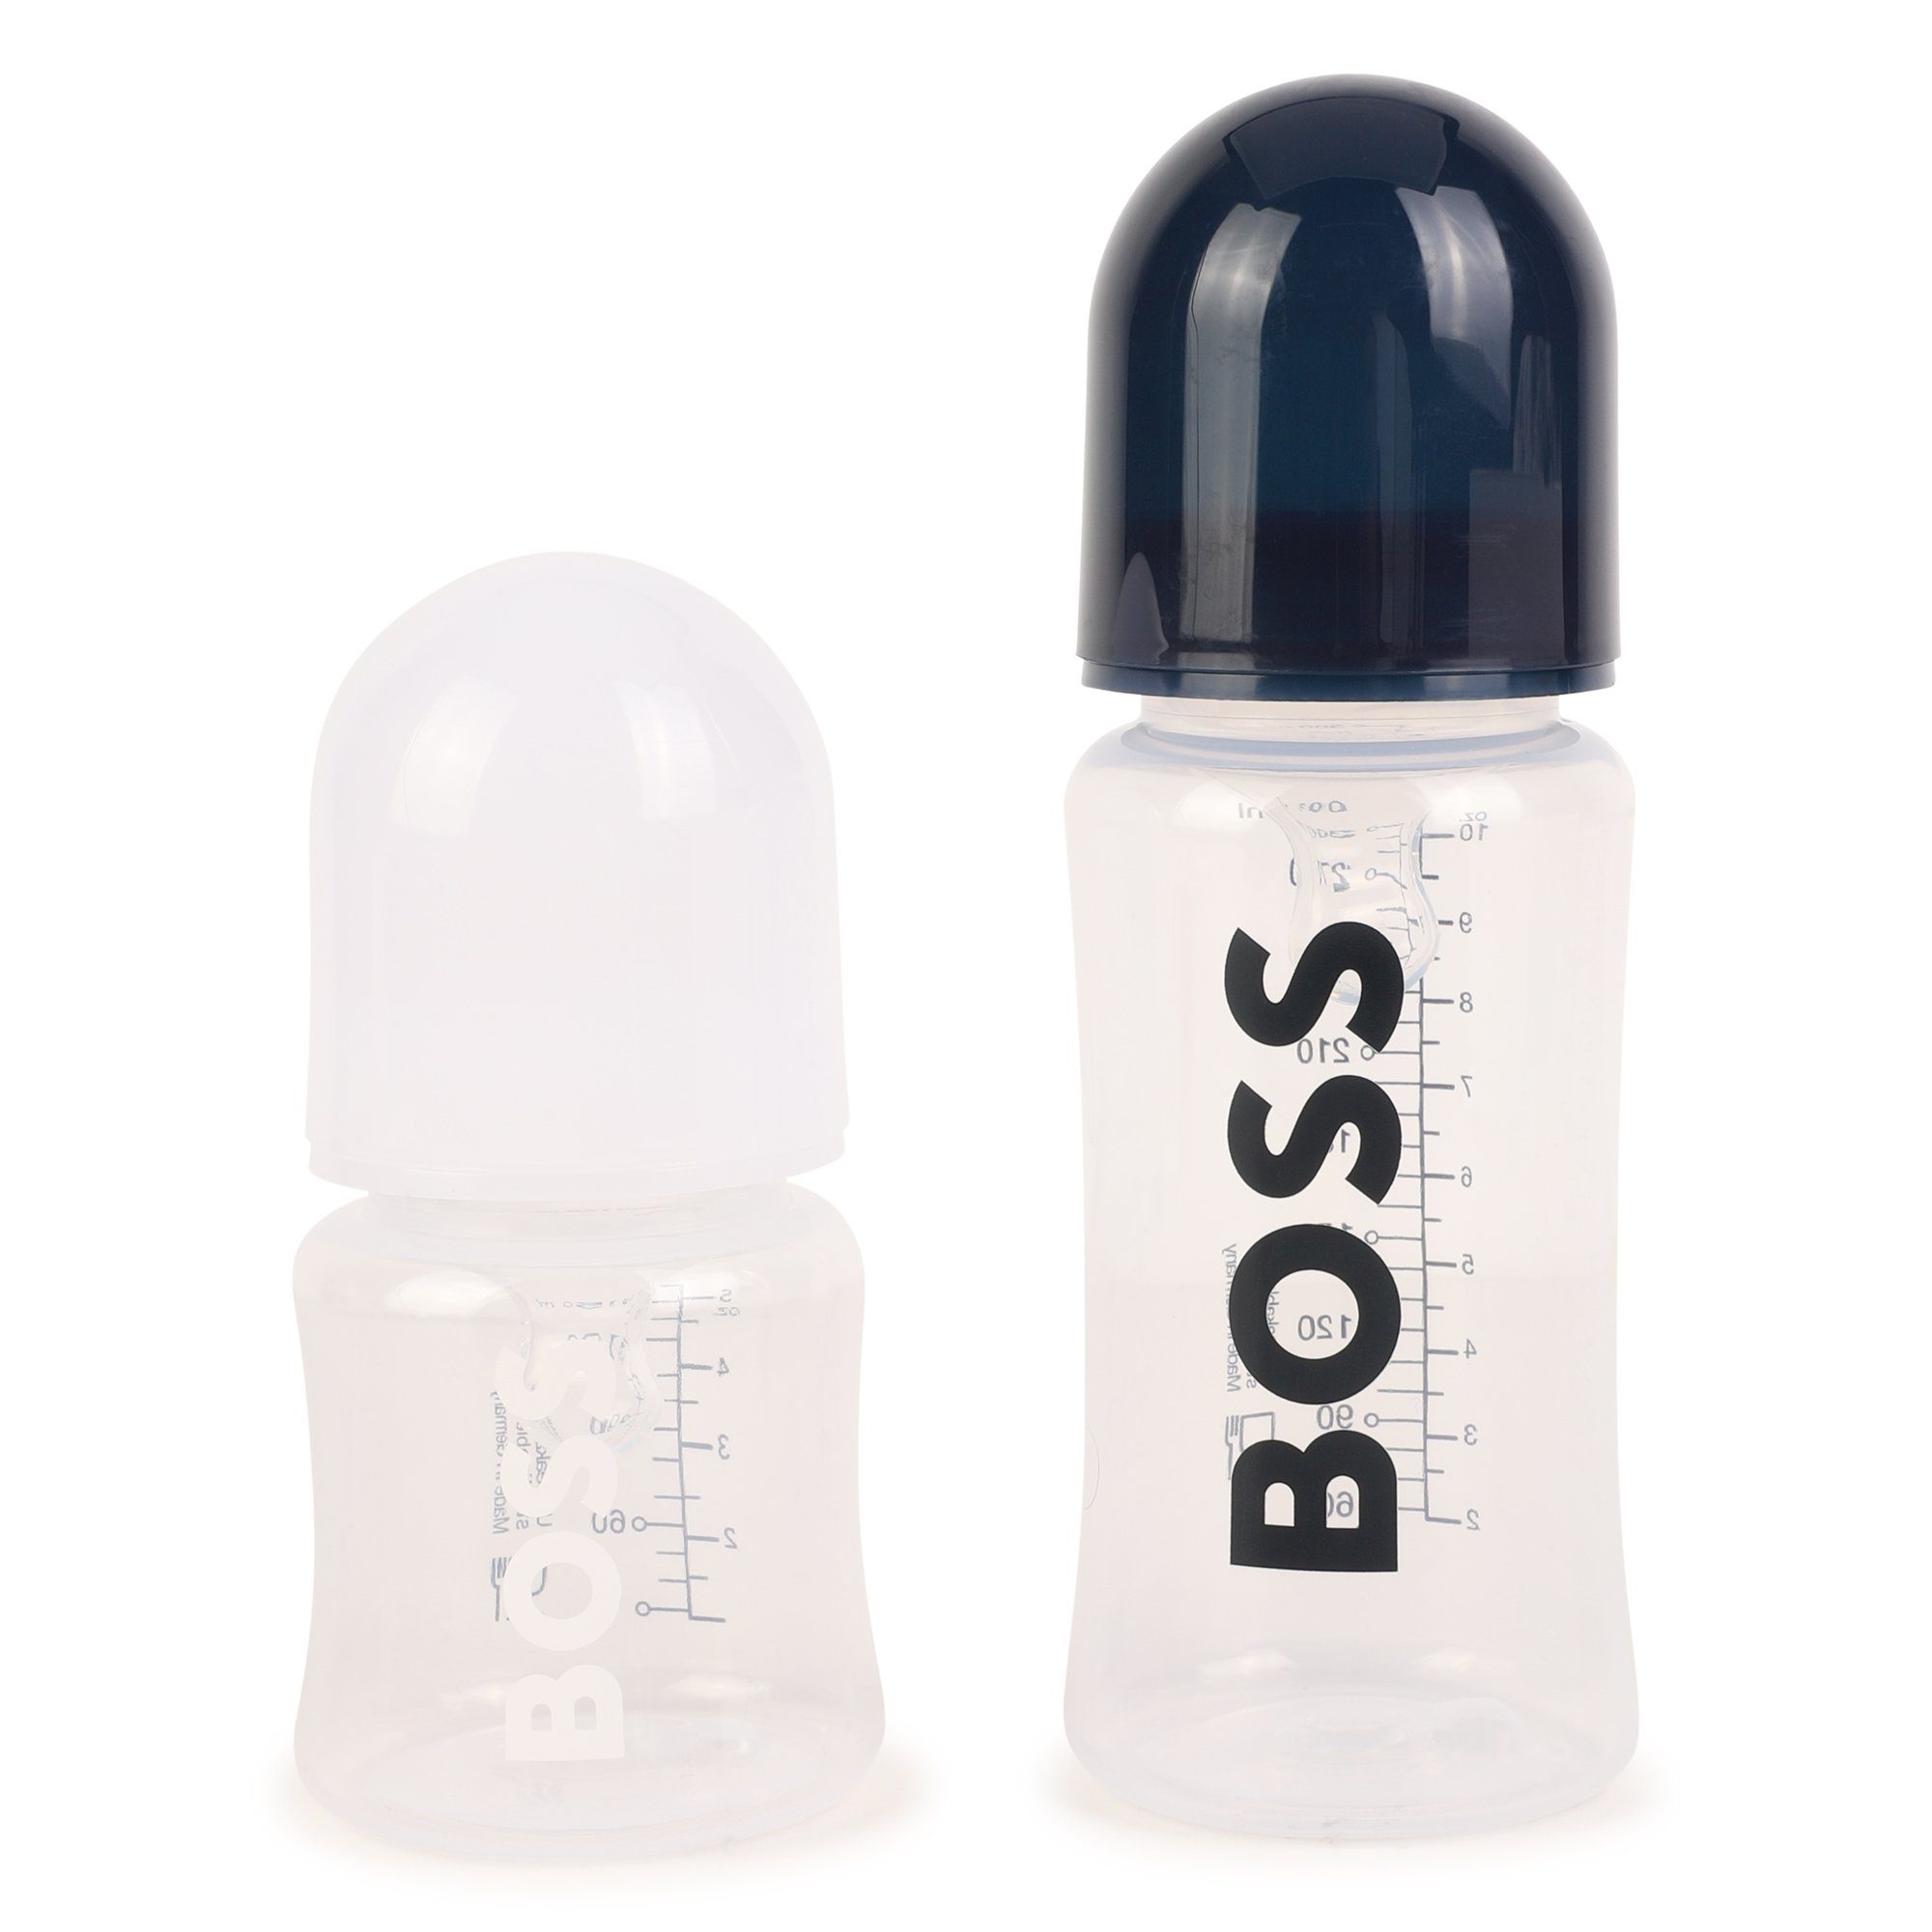 Zweierpack BOSS Baby im Geschenkset Set Boss Neugeborenen-Geschenkset Flaschen